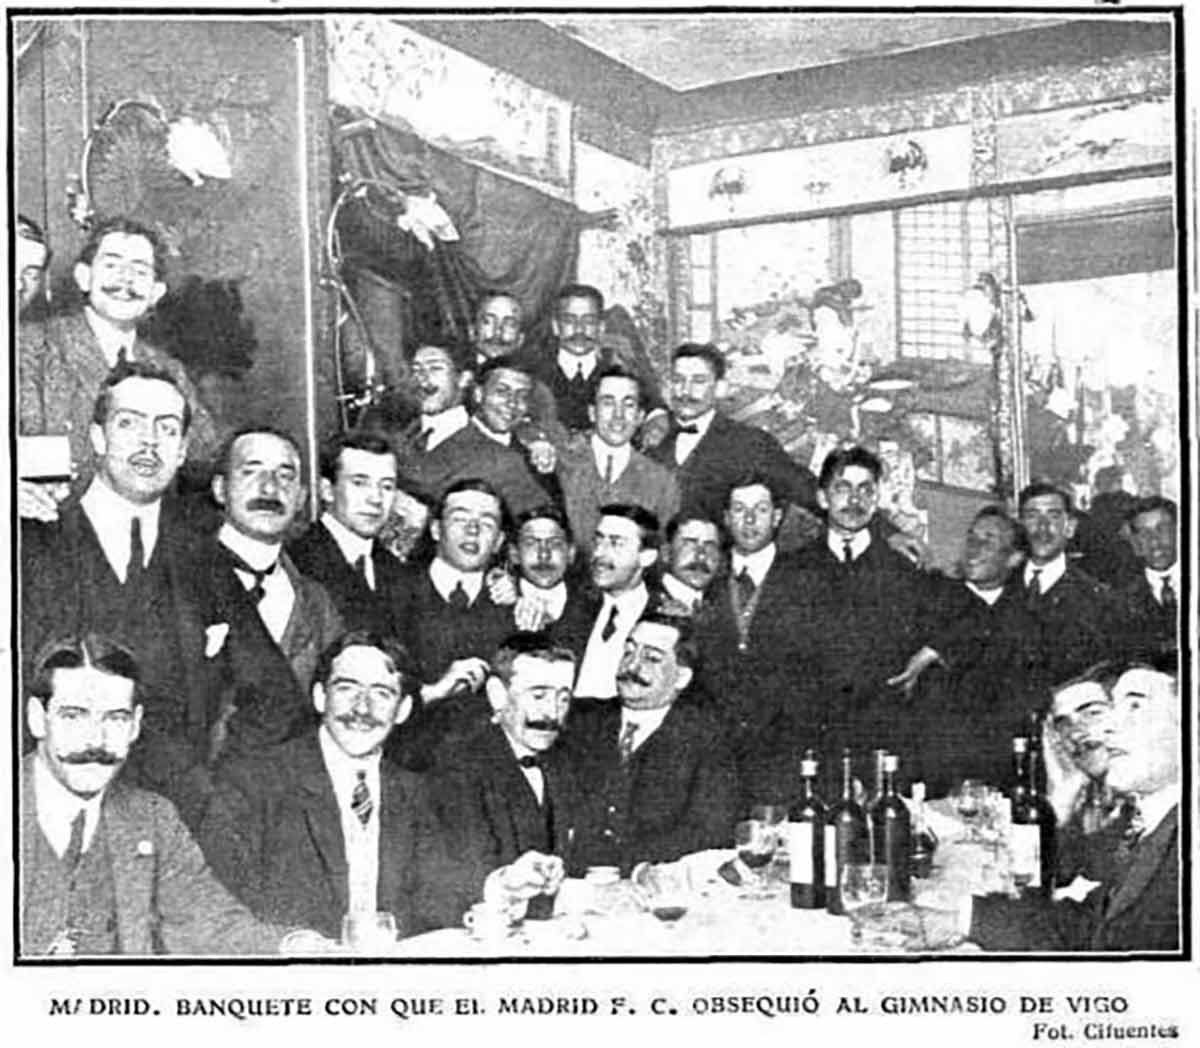 Banquete tras la final ante el Vigo Football Club, 1908